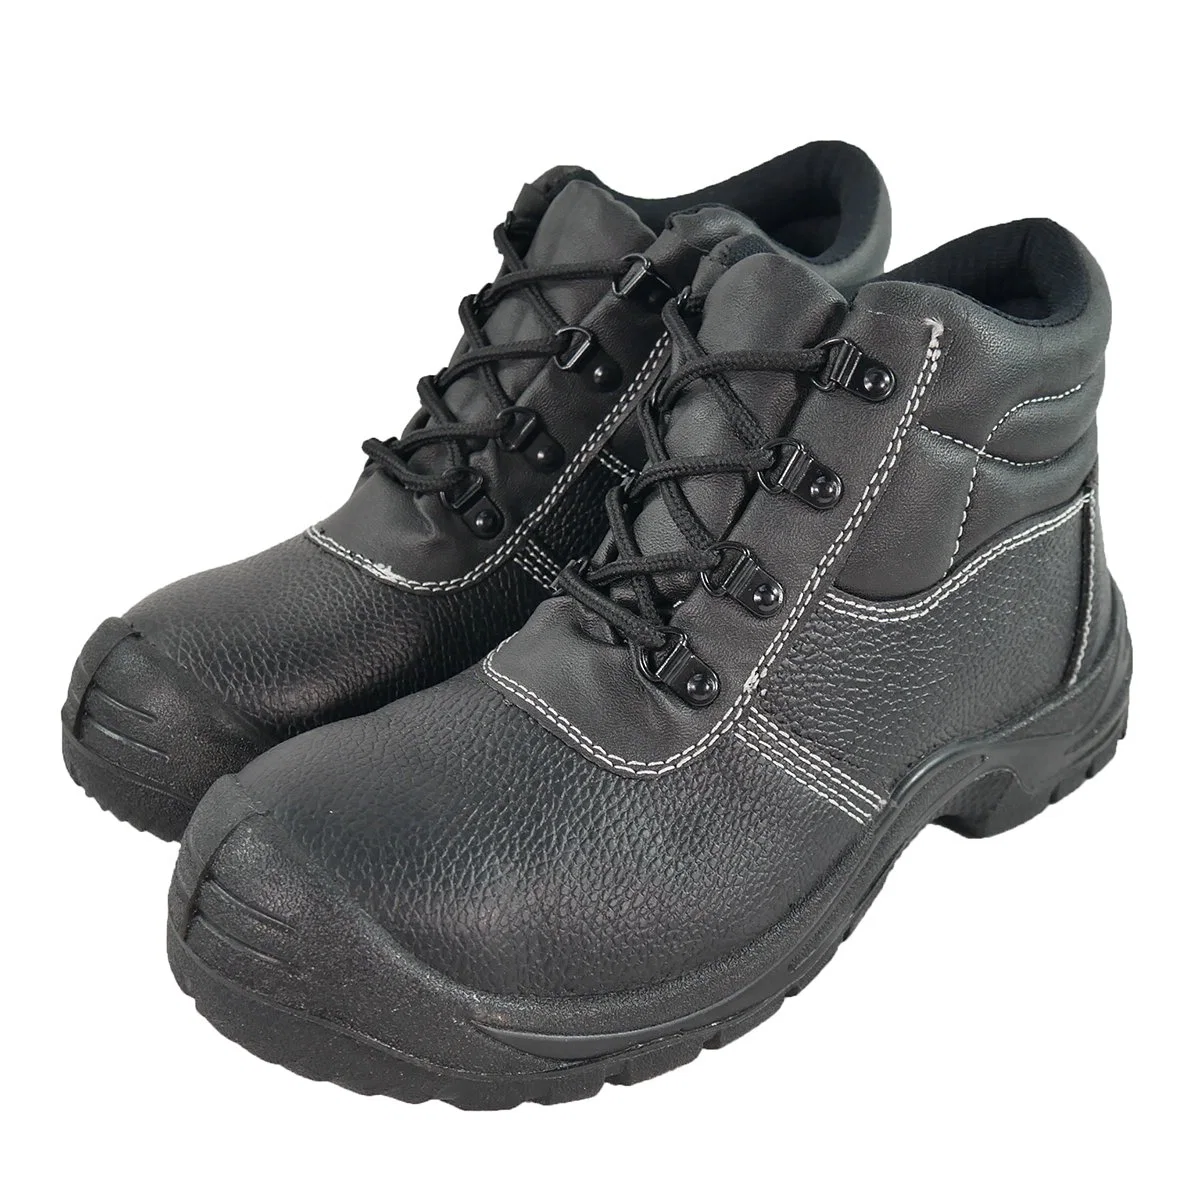 Nueva venta en caliente Trabajo de protección industrial Sneakers Casual puntera de hierro Zapatos de seguridad Zapatos de protección negro para hombre